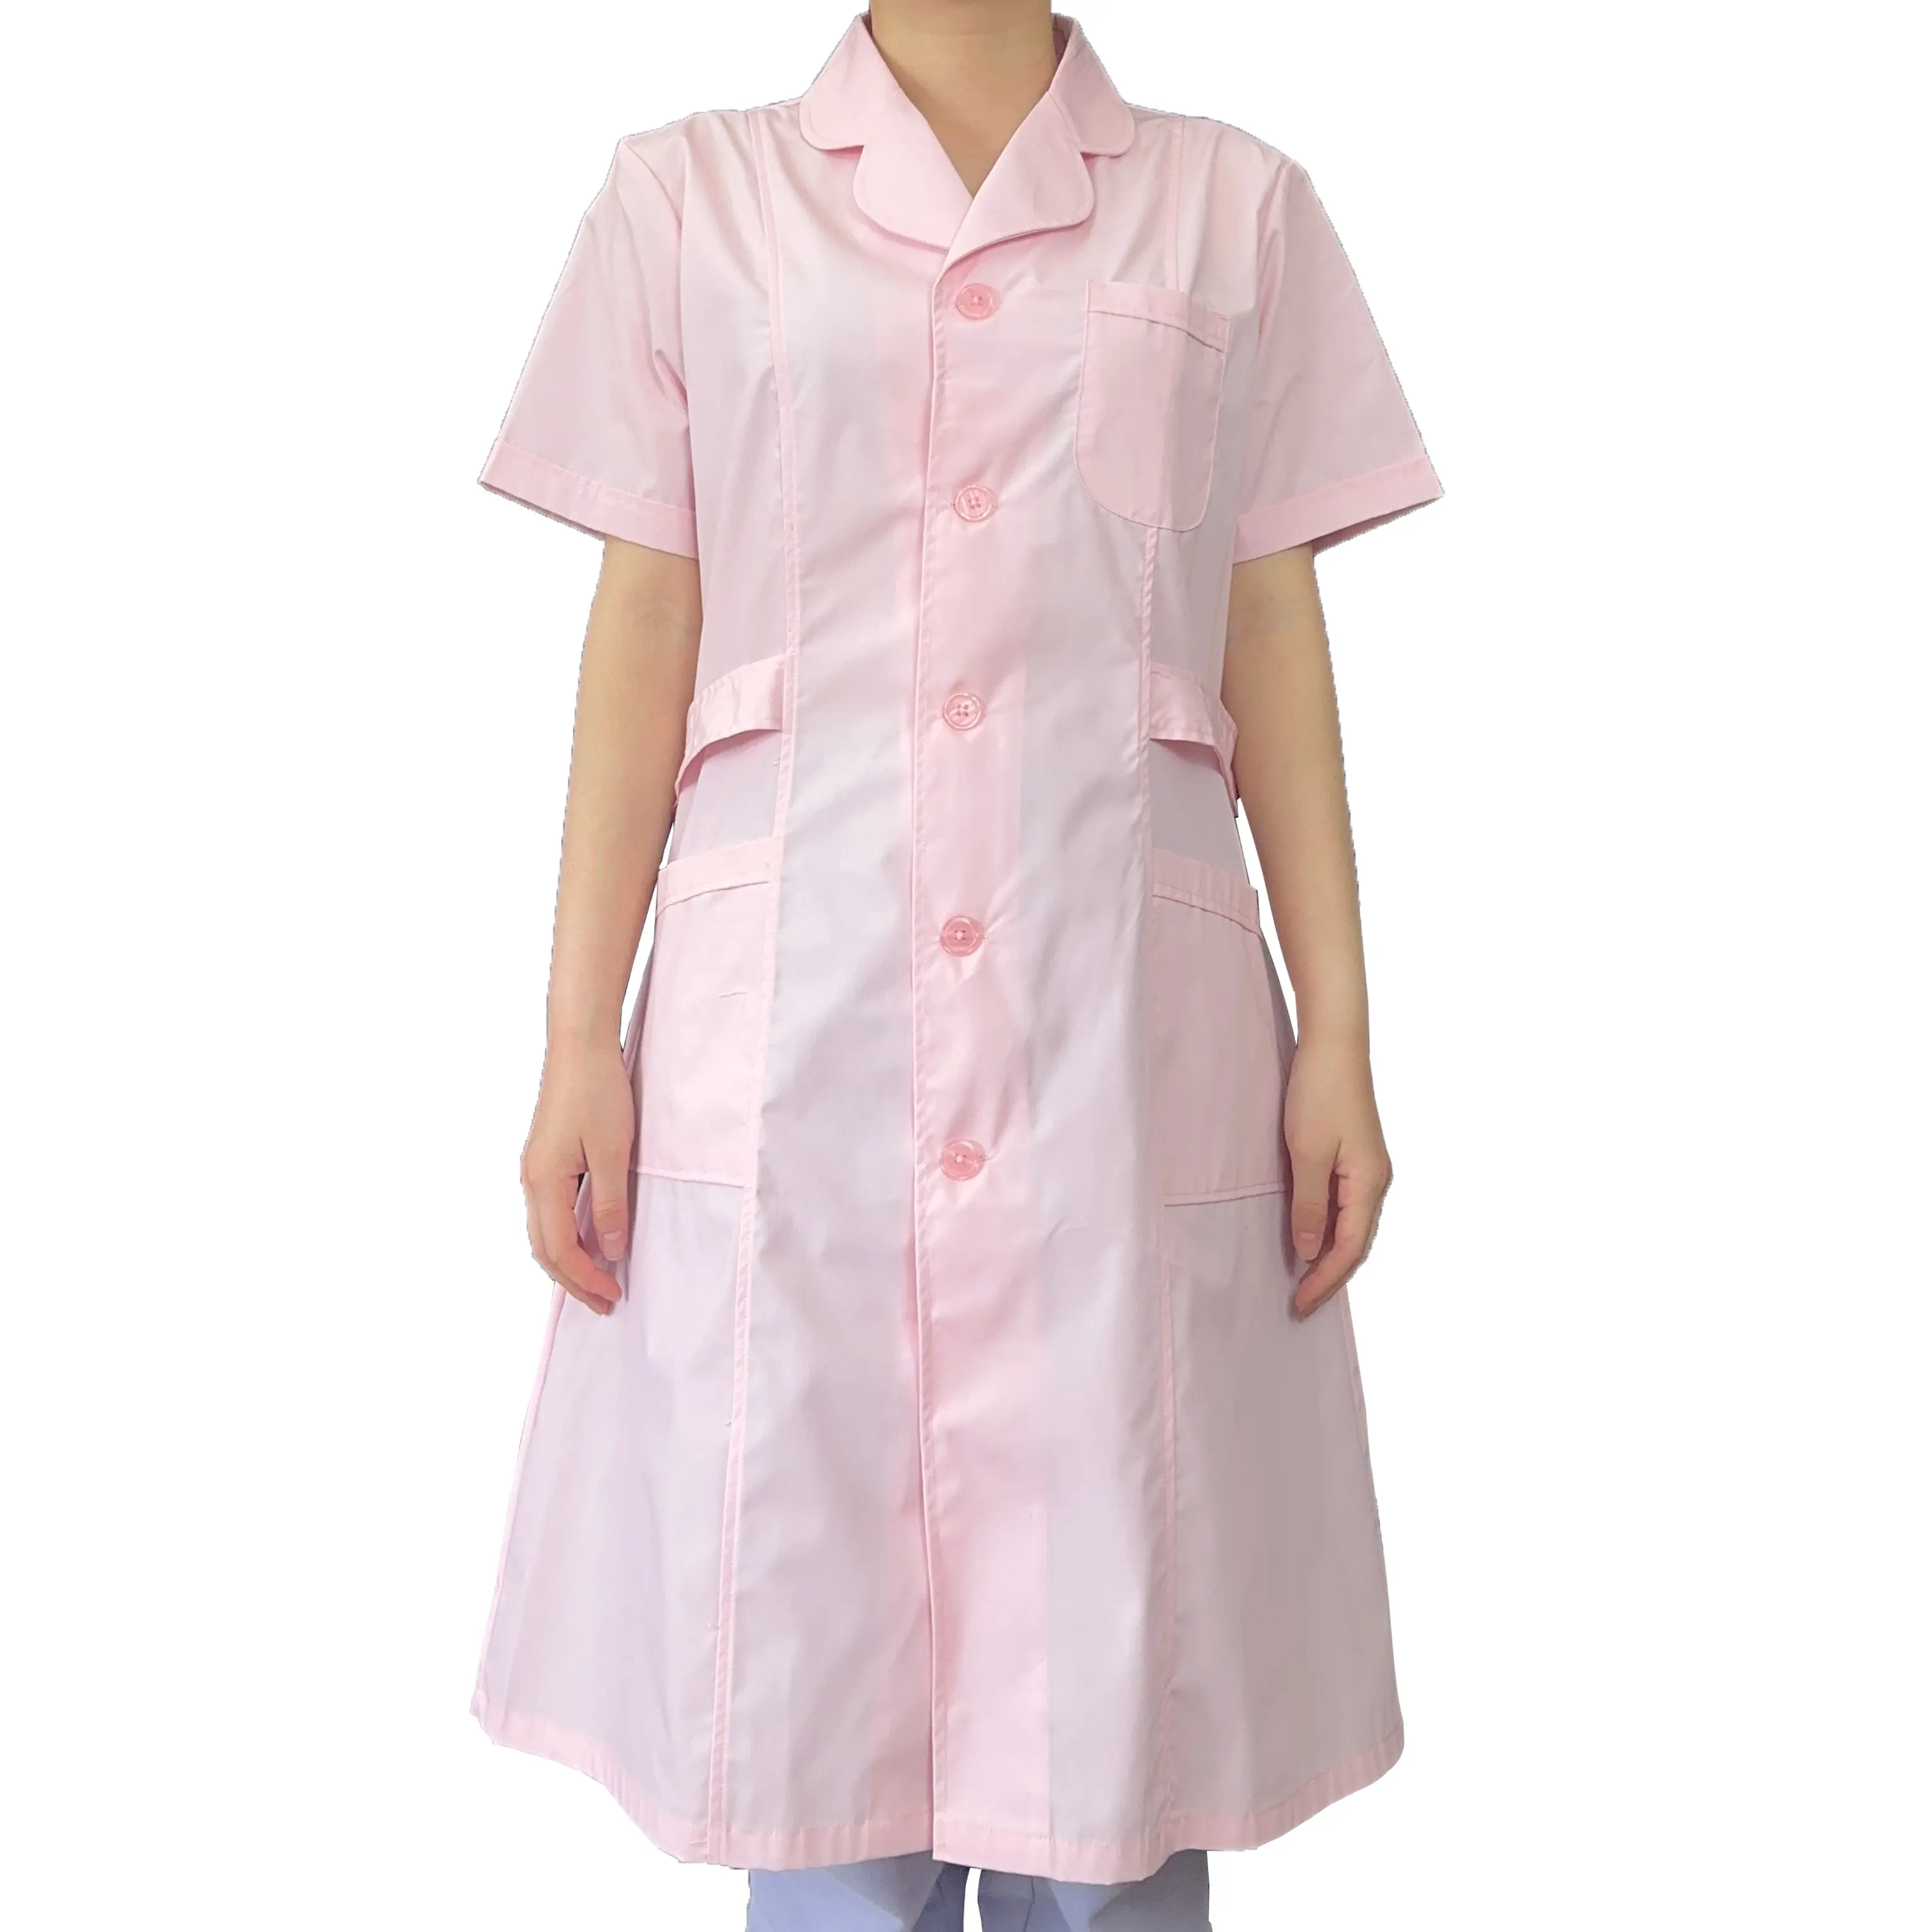 Uniforme d'hôpital respirant personnalisé fabricant uniforme infirmière à la mode ensemble uniforme de gommage médical Spandex soins infirmiers gommages pour U